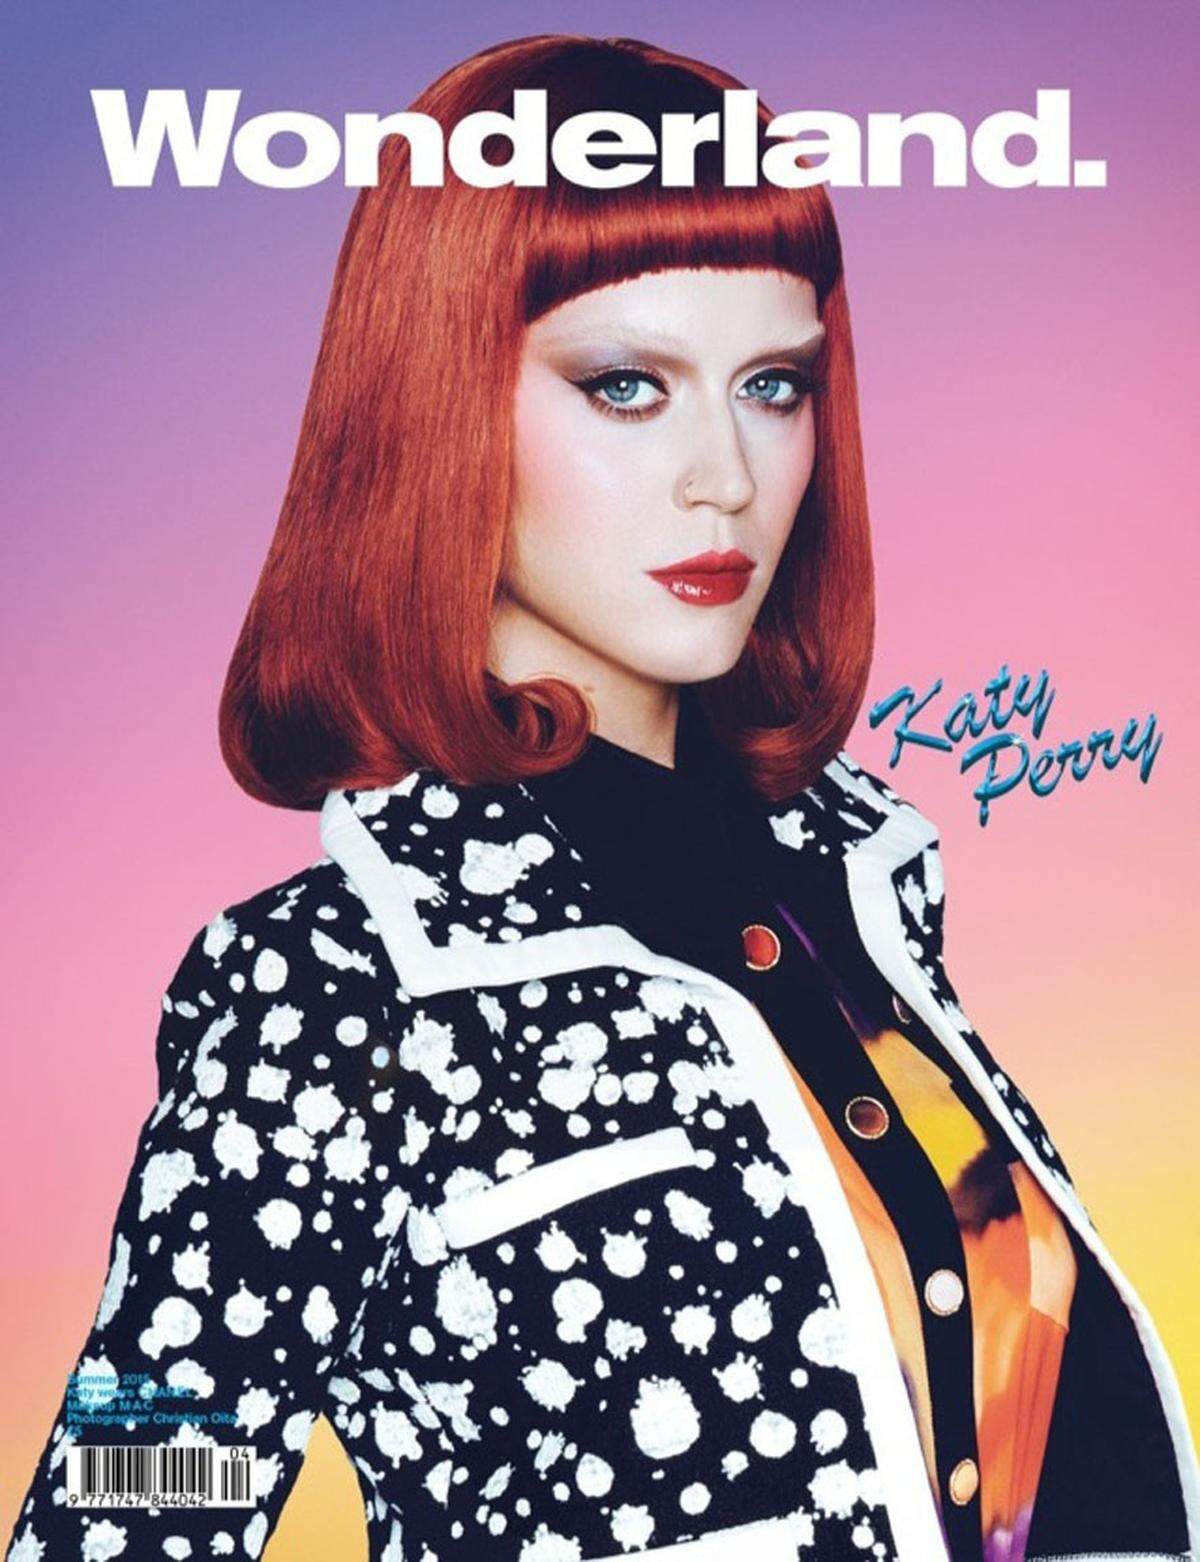 Katy Perry gelang das nicht ganz so chamäleonhaft wie Swinton für das Magazin "Wonderland".